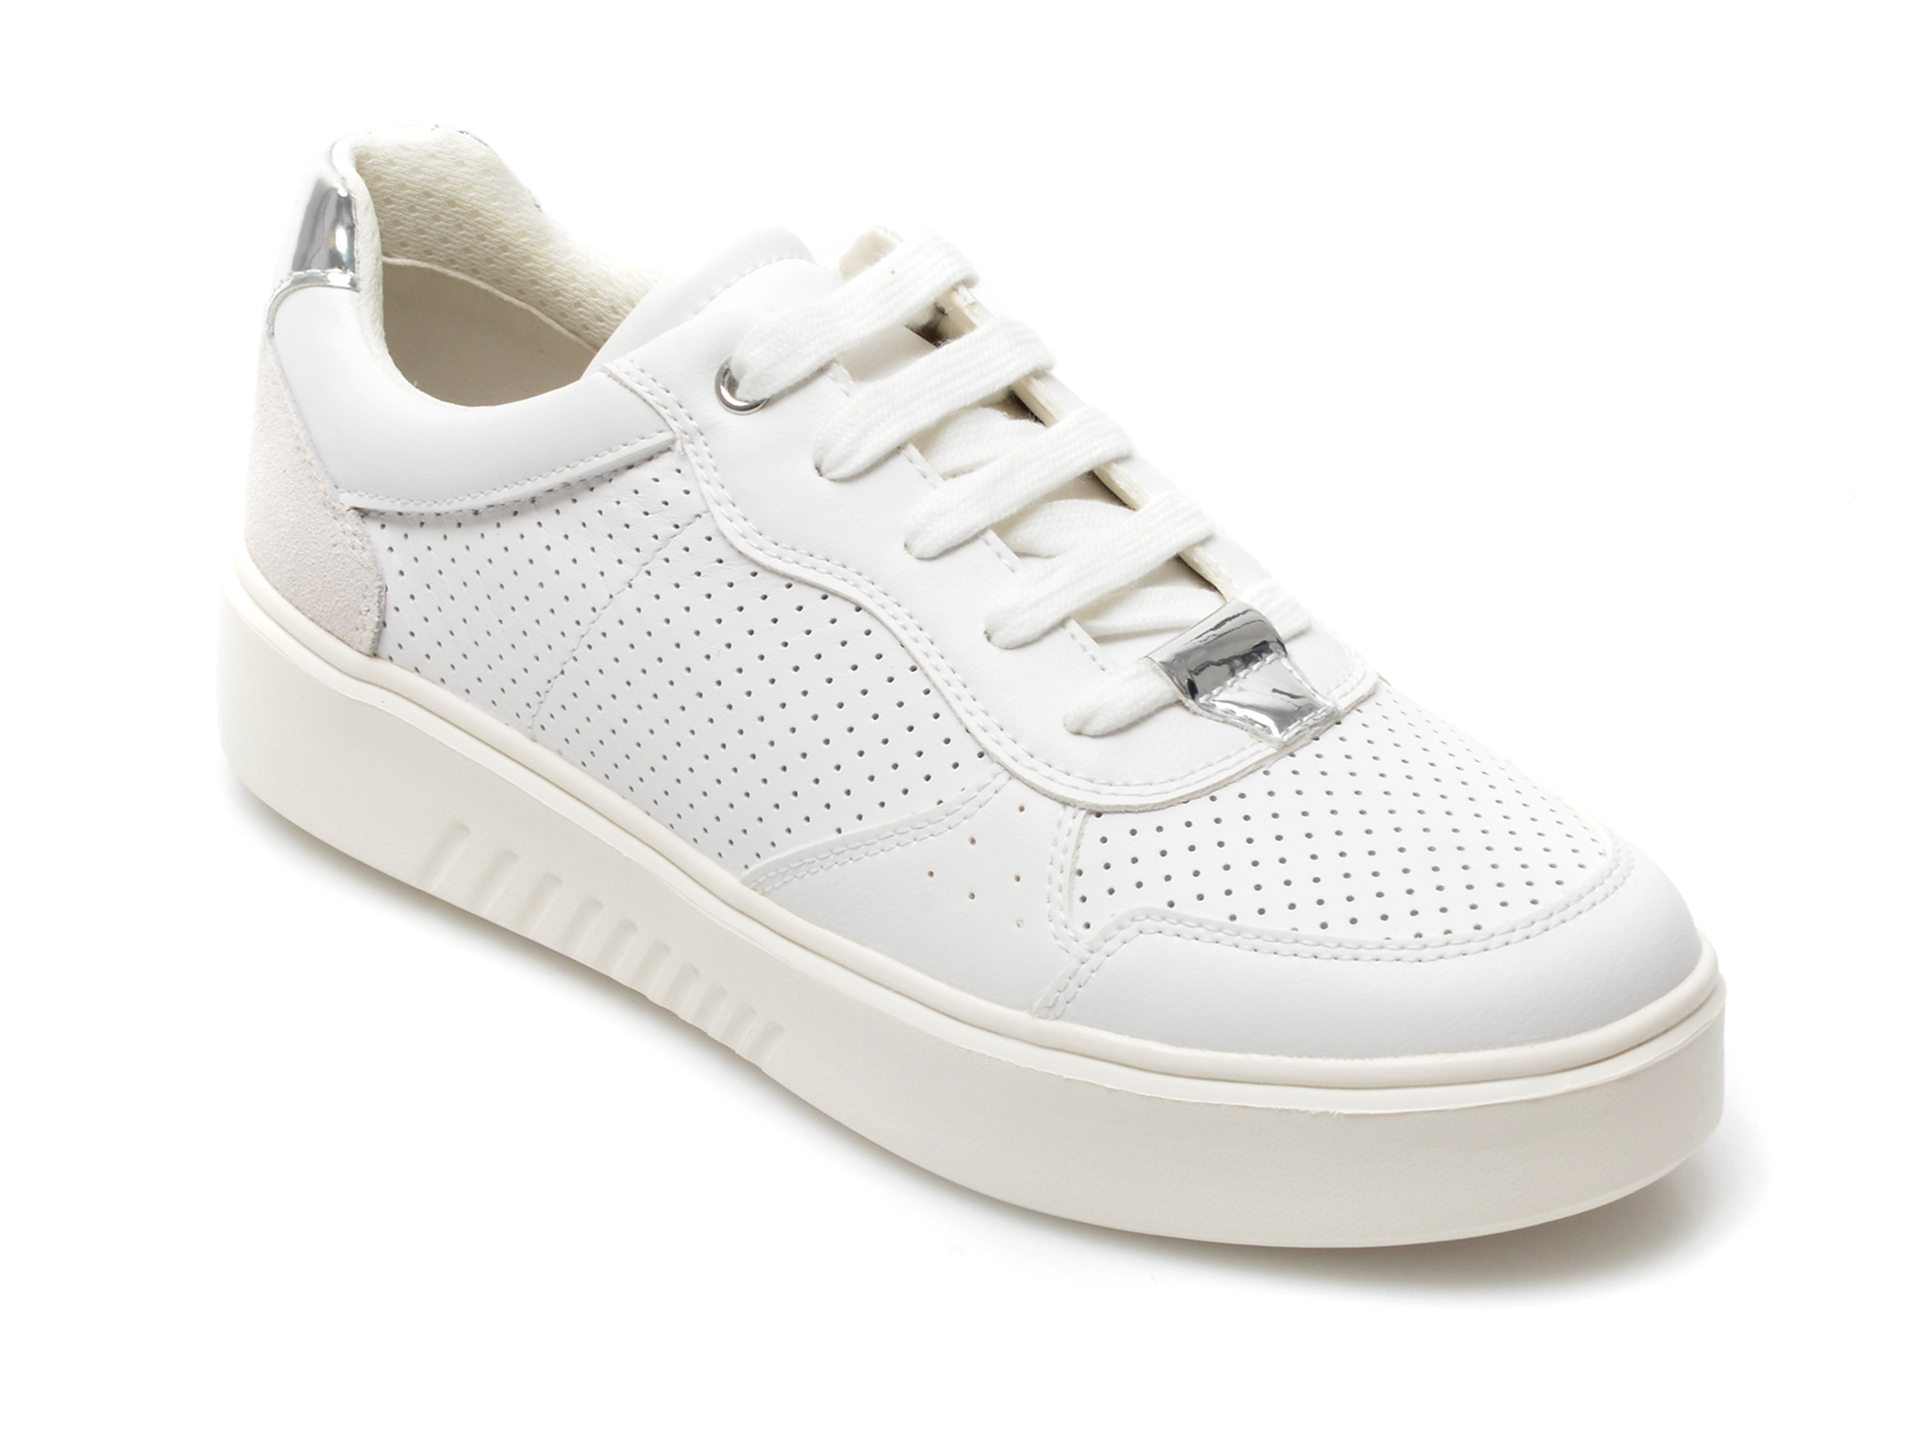 Pantofi sport GEOX albi, D258DA, din piele naturala Geox